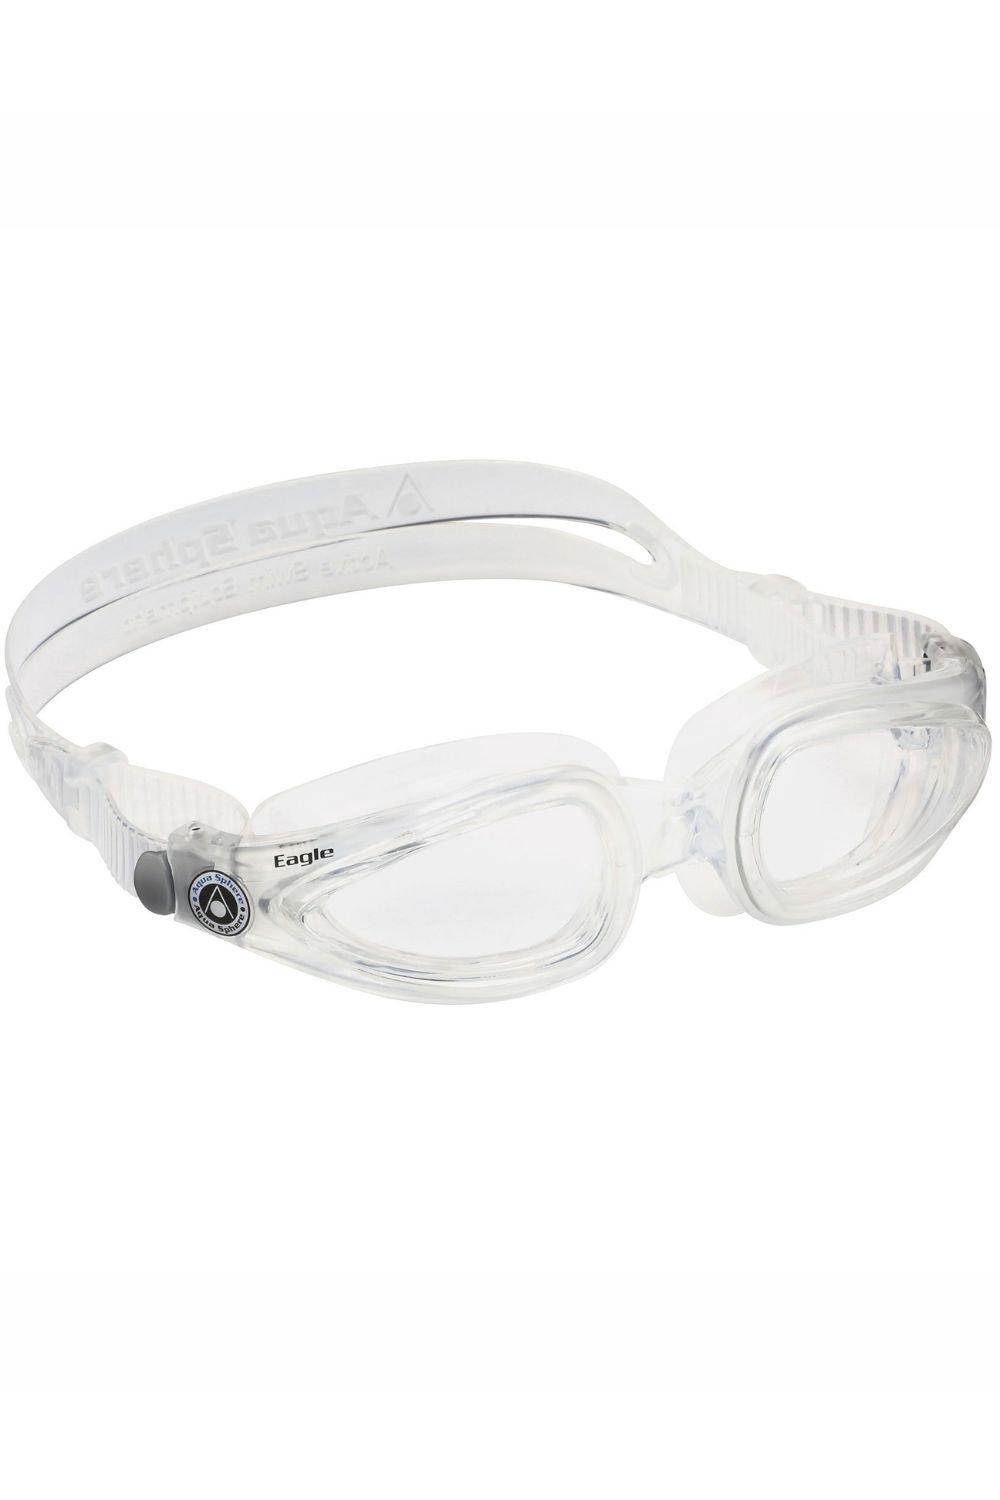 Оптические очки для плавания Eagle Aquasphere, прозрачный синий лазерный фокусирующий объектив 405 g 2 коллиматор с покрытием стеклянные оптические линзы для диодов ndb7875 ndb777